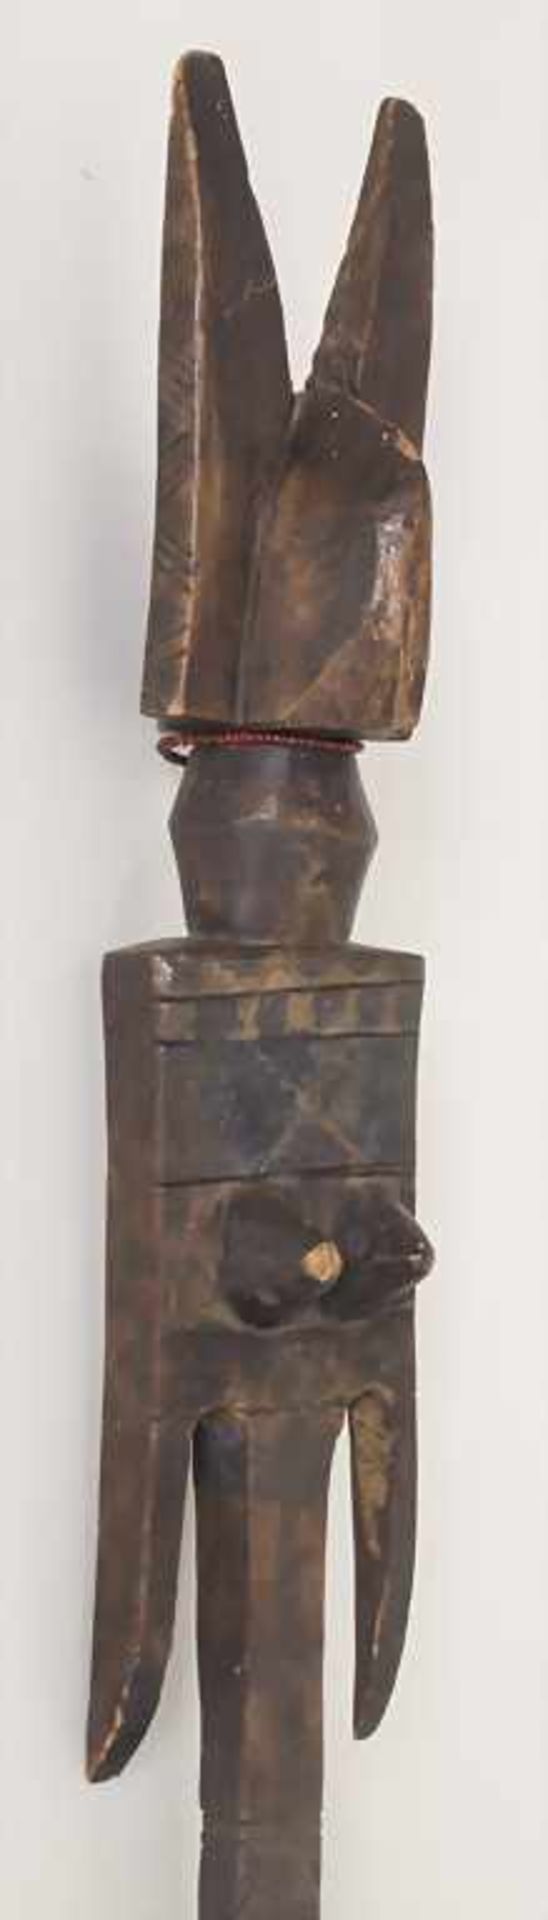 Ritualstab mit stilisierter Frauenfigur der Dogon, Mali, 20. Jh.Material: Holzstab mit umlaufendem - Bild 2 aus 3